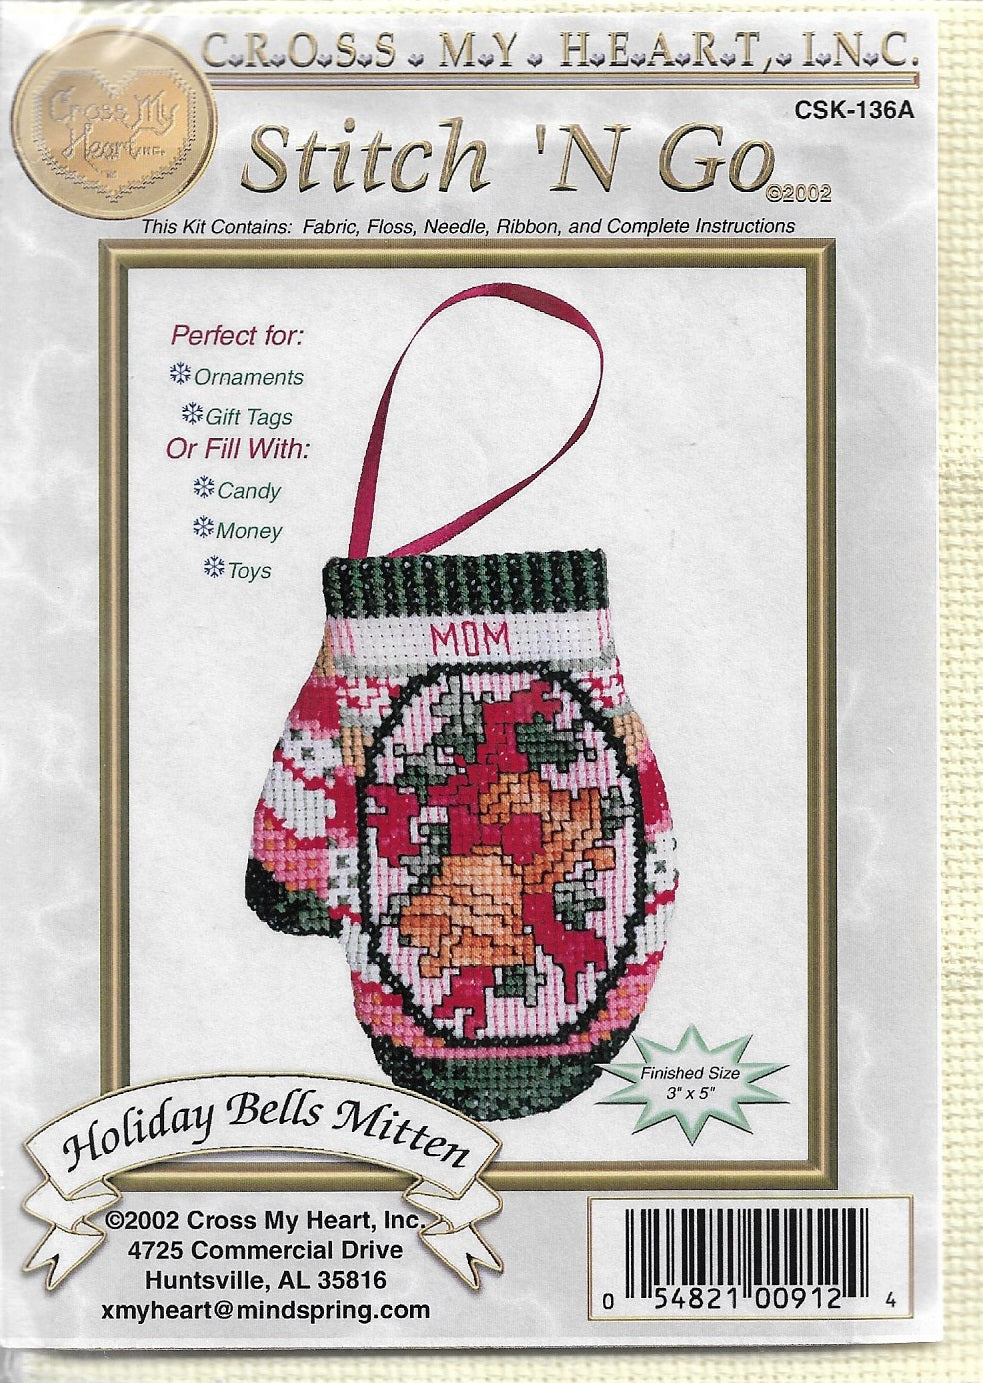 Cross My Heart Holiday Bells Mitten CSK-136A cross stitch kit